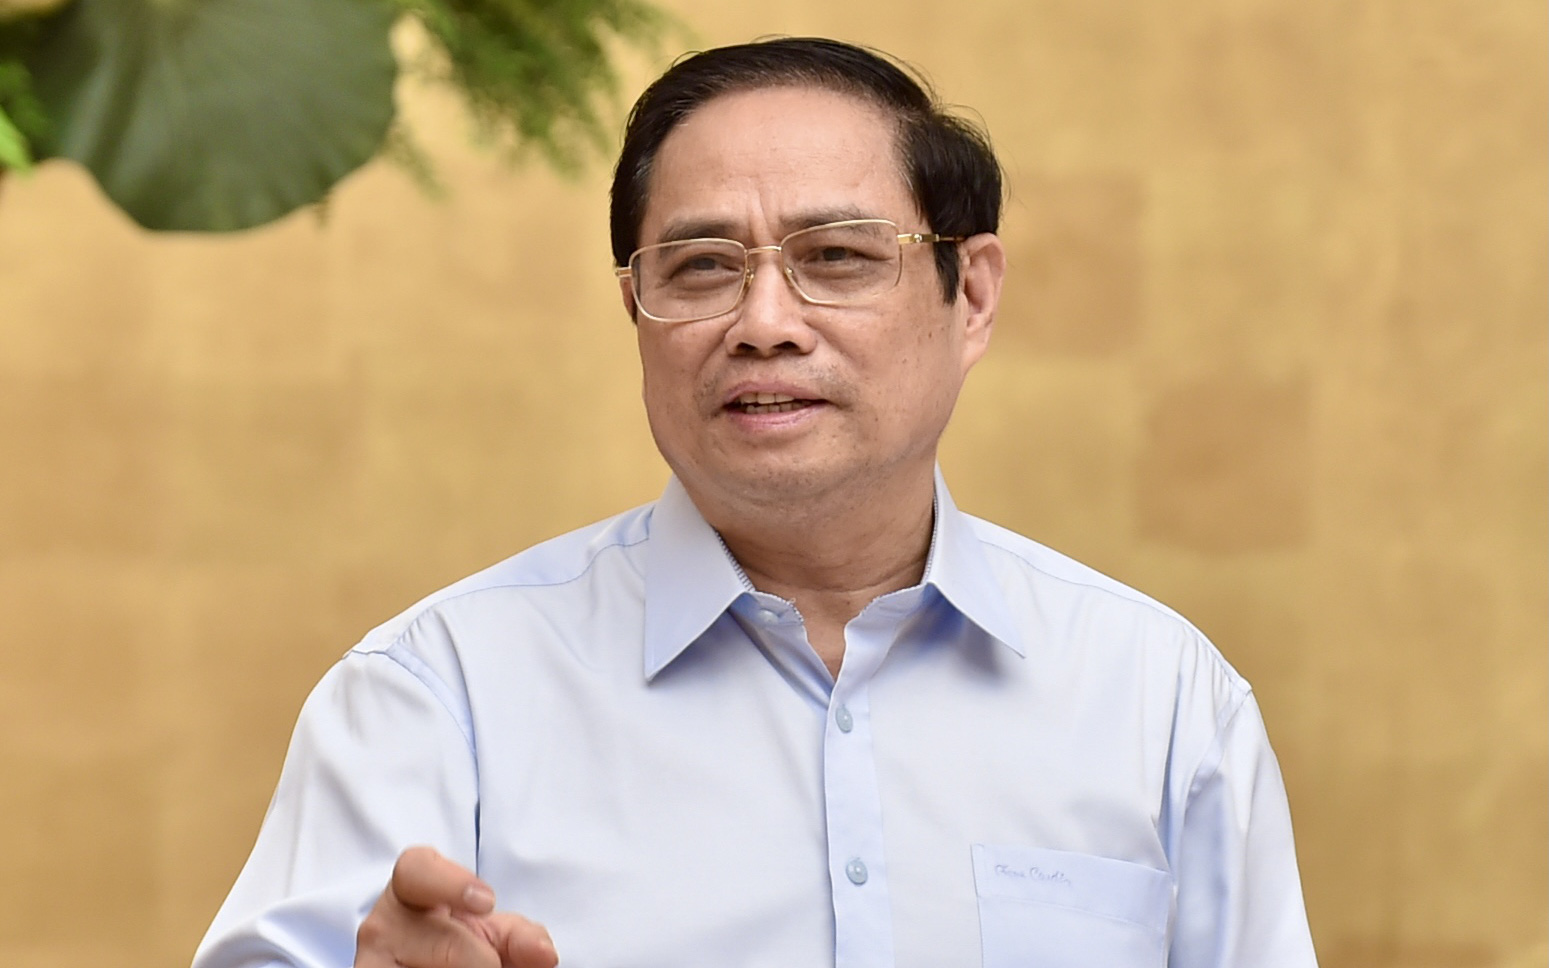 Thủ tướng Phạm Minh Chính: 'Nhất định chúng ta sẽ sớm chiến thắng đại dịch COVID-19'